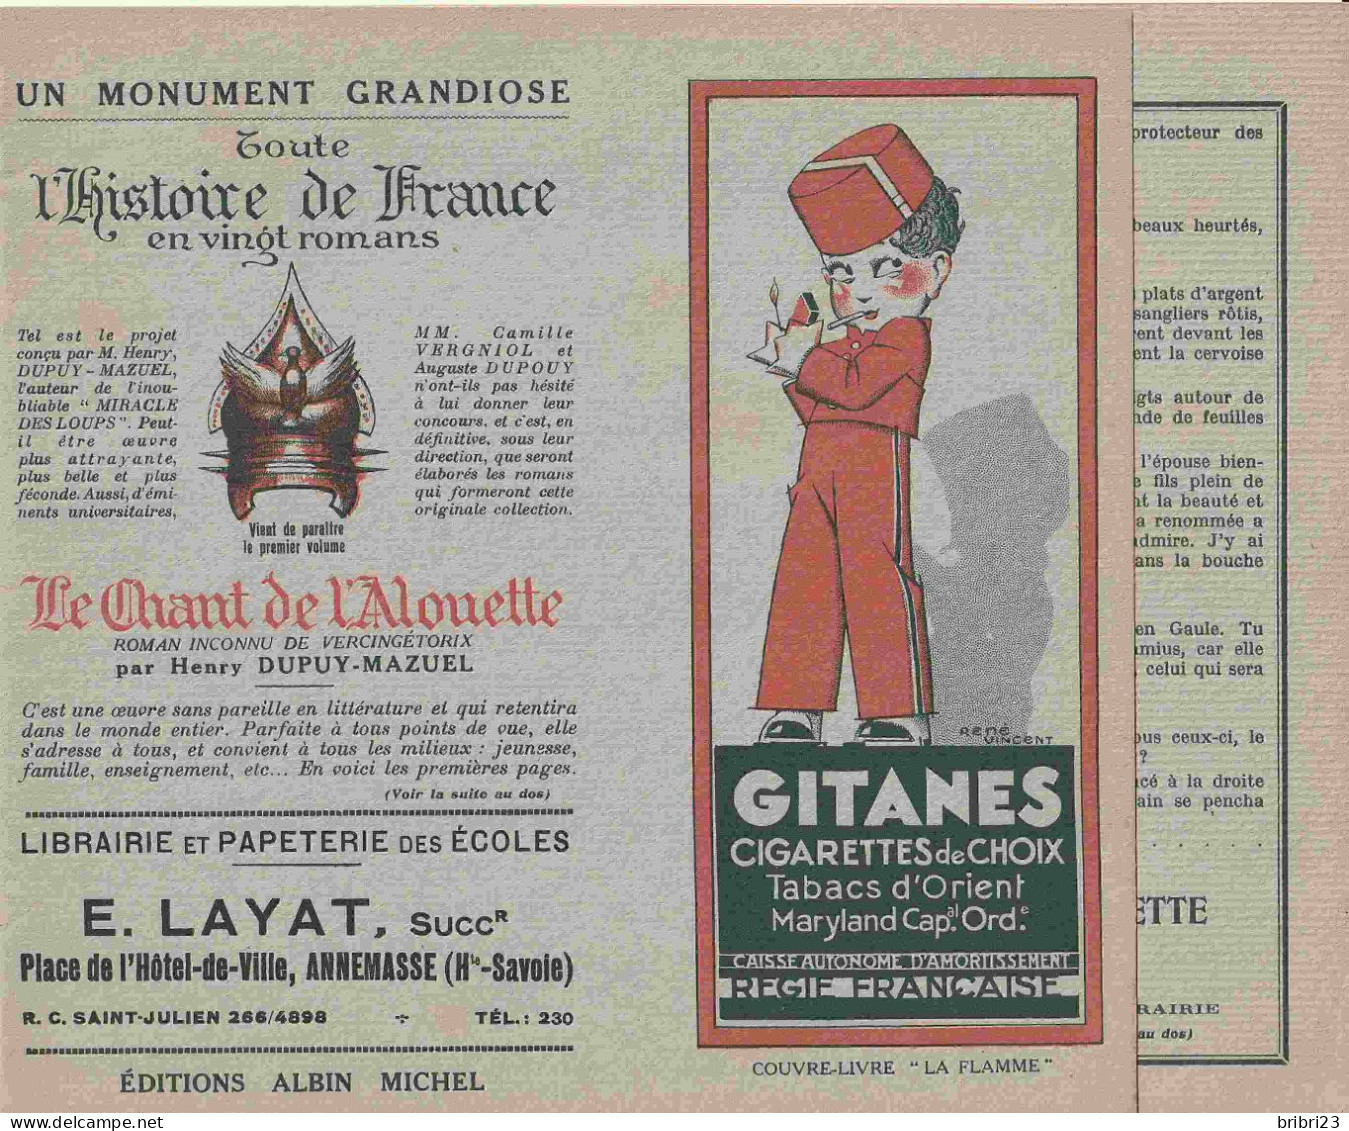 COUVRE-LIVRE " LA FLAMME " PUBLICITE LIBRAIRIE Annemasse - CIGARETTES GITANES BALTO - Tabac & Cigarettes